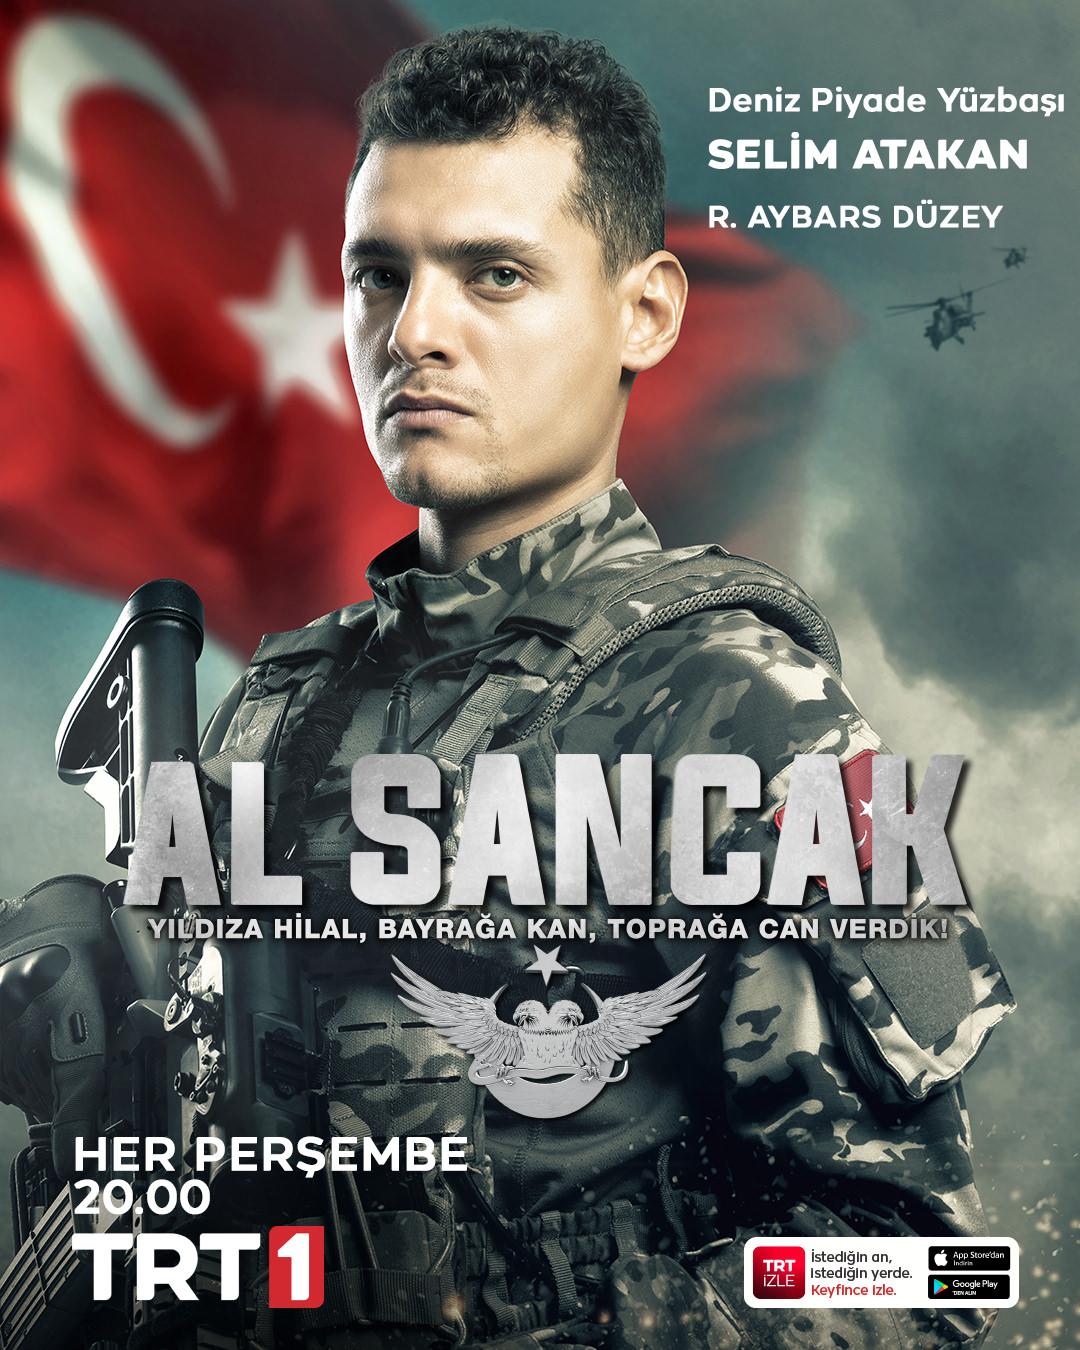 Deniz Piyade Yüzbaşı Selim Atakan’ı canlandıran R. Aybars Düzey